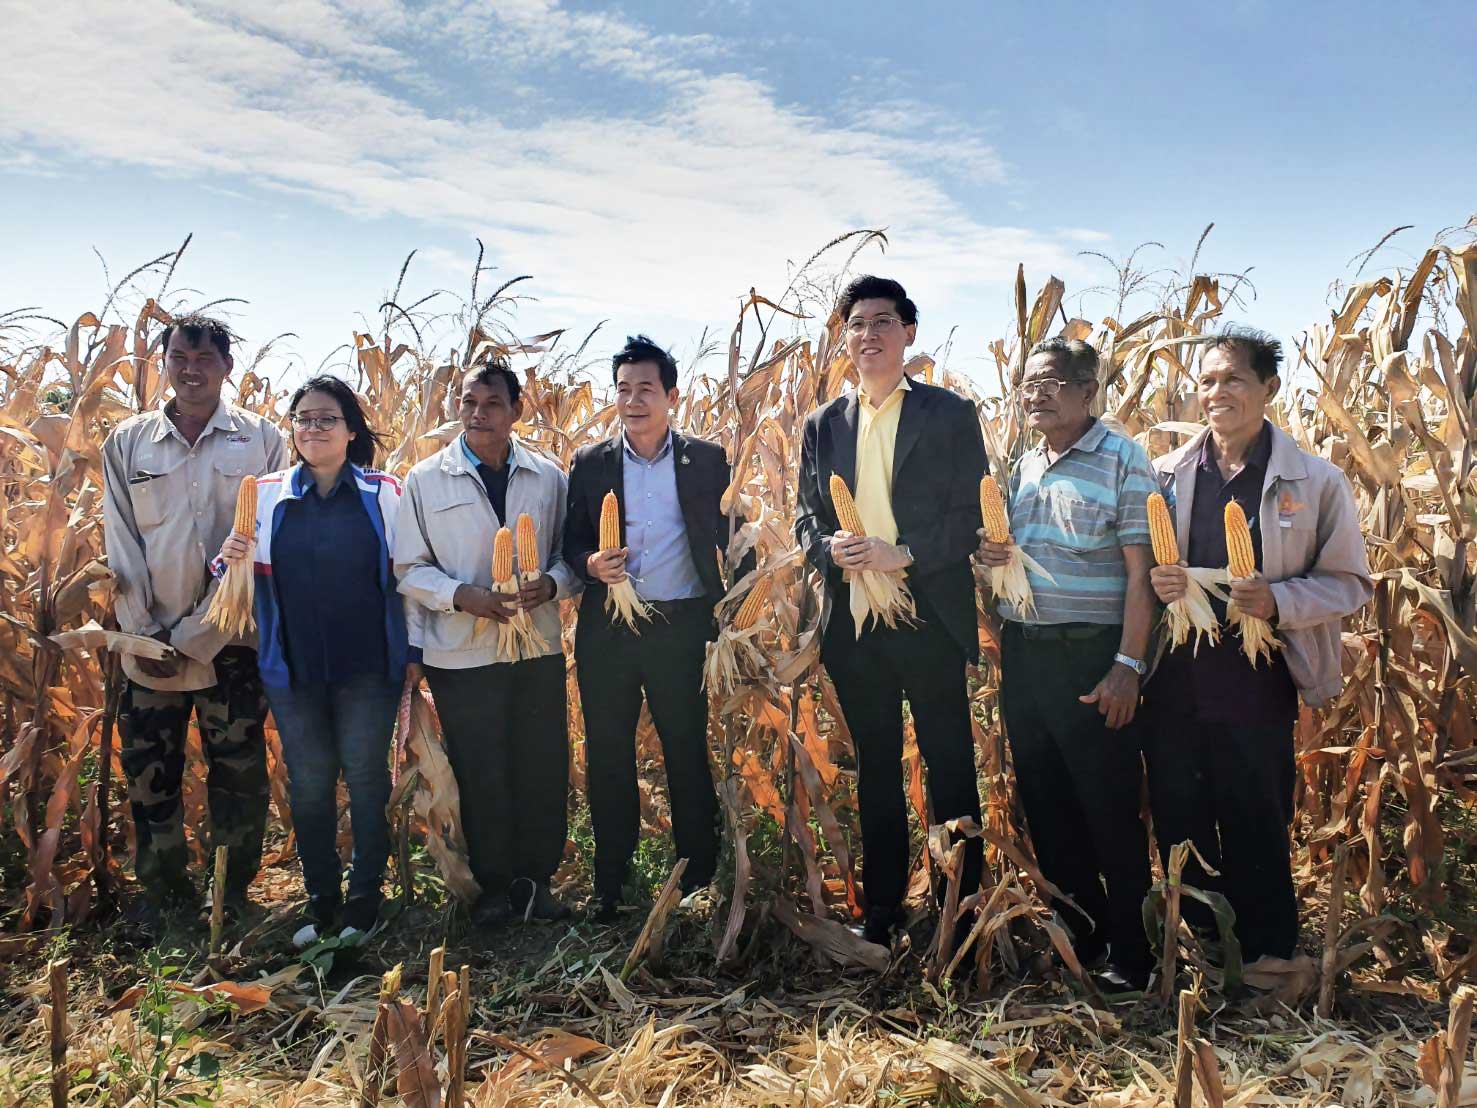 “บัลลังก์โมเดล” ซีพี ชูความสำเร็จต้นแบบชุมชนเกษตรกรปลูกข้าวโพดยั่งยืน ต่อเนื่องเป็นปีที่ 4